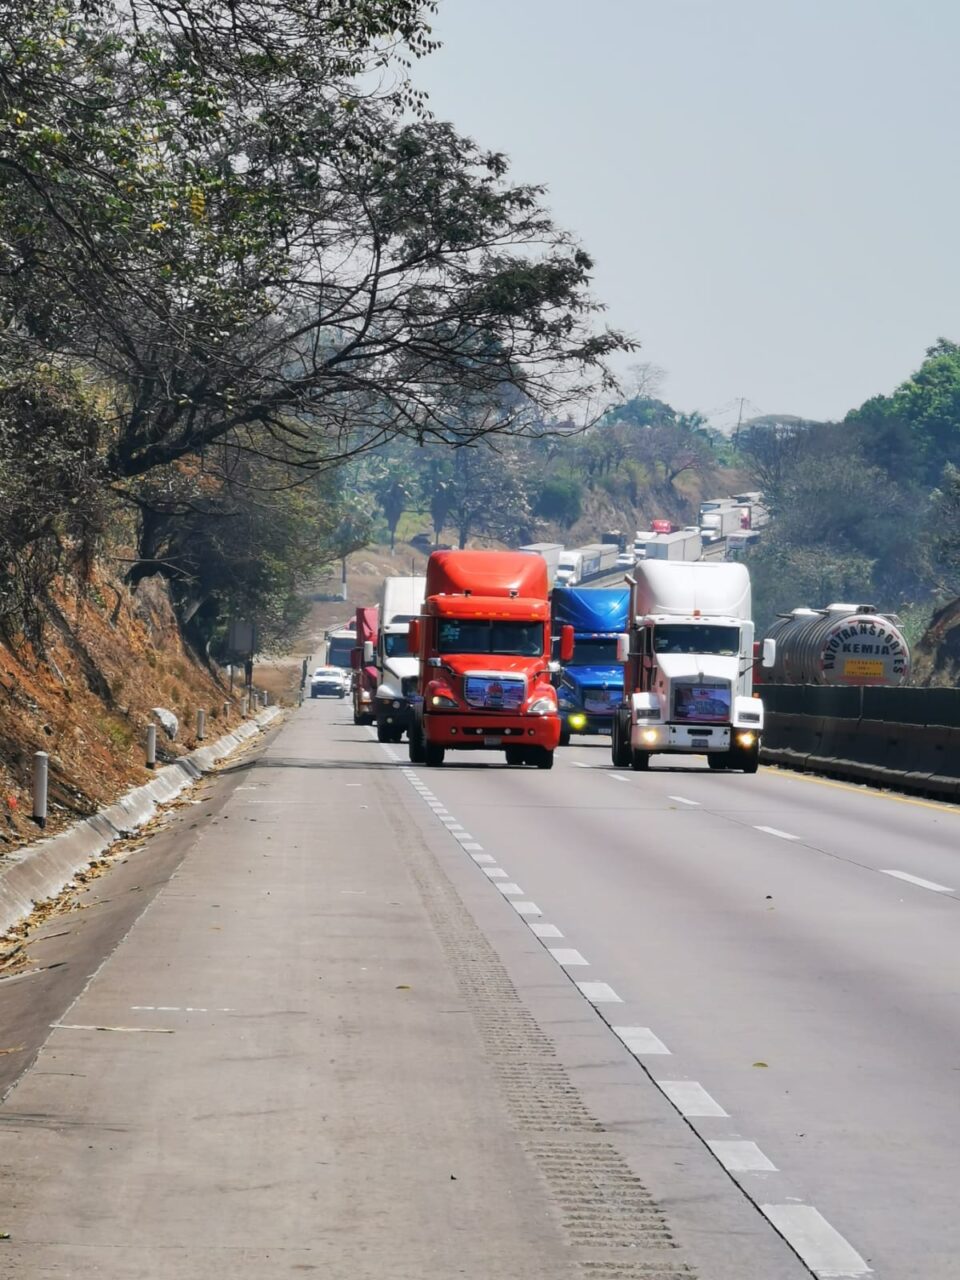 Robo de transporte de carga aumentó 46% en los últimos 2 años en México: Amis